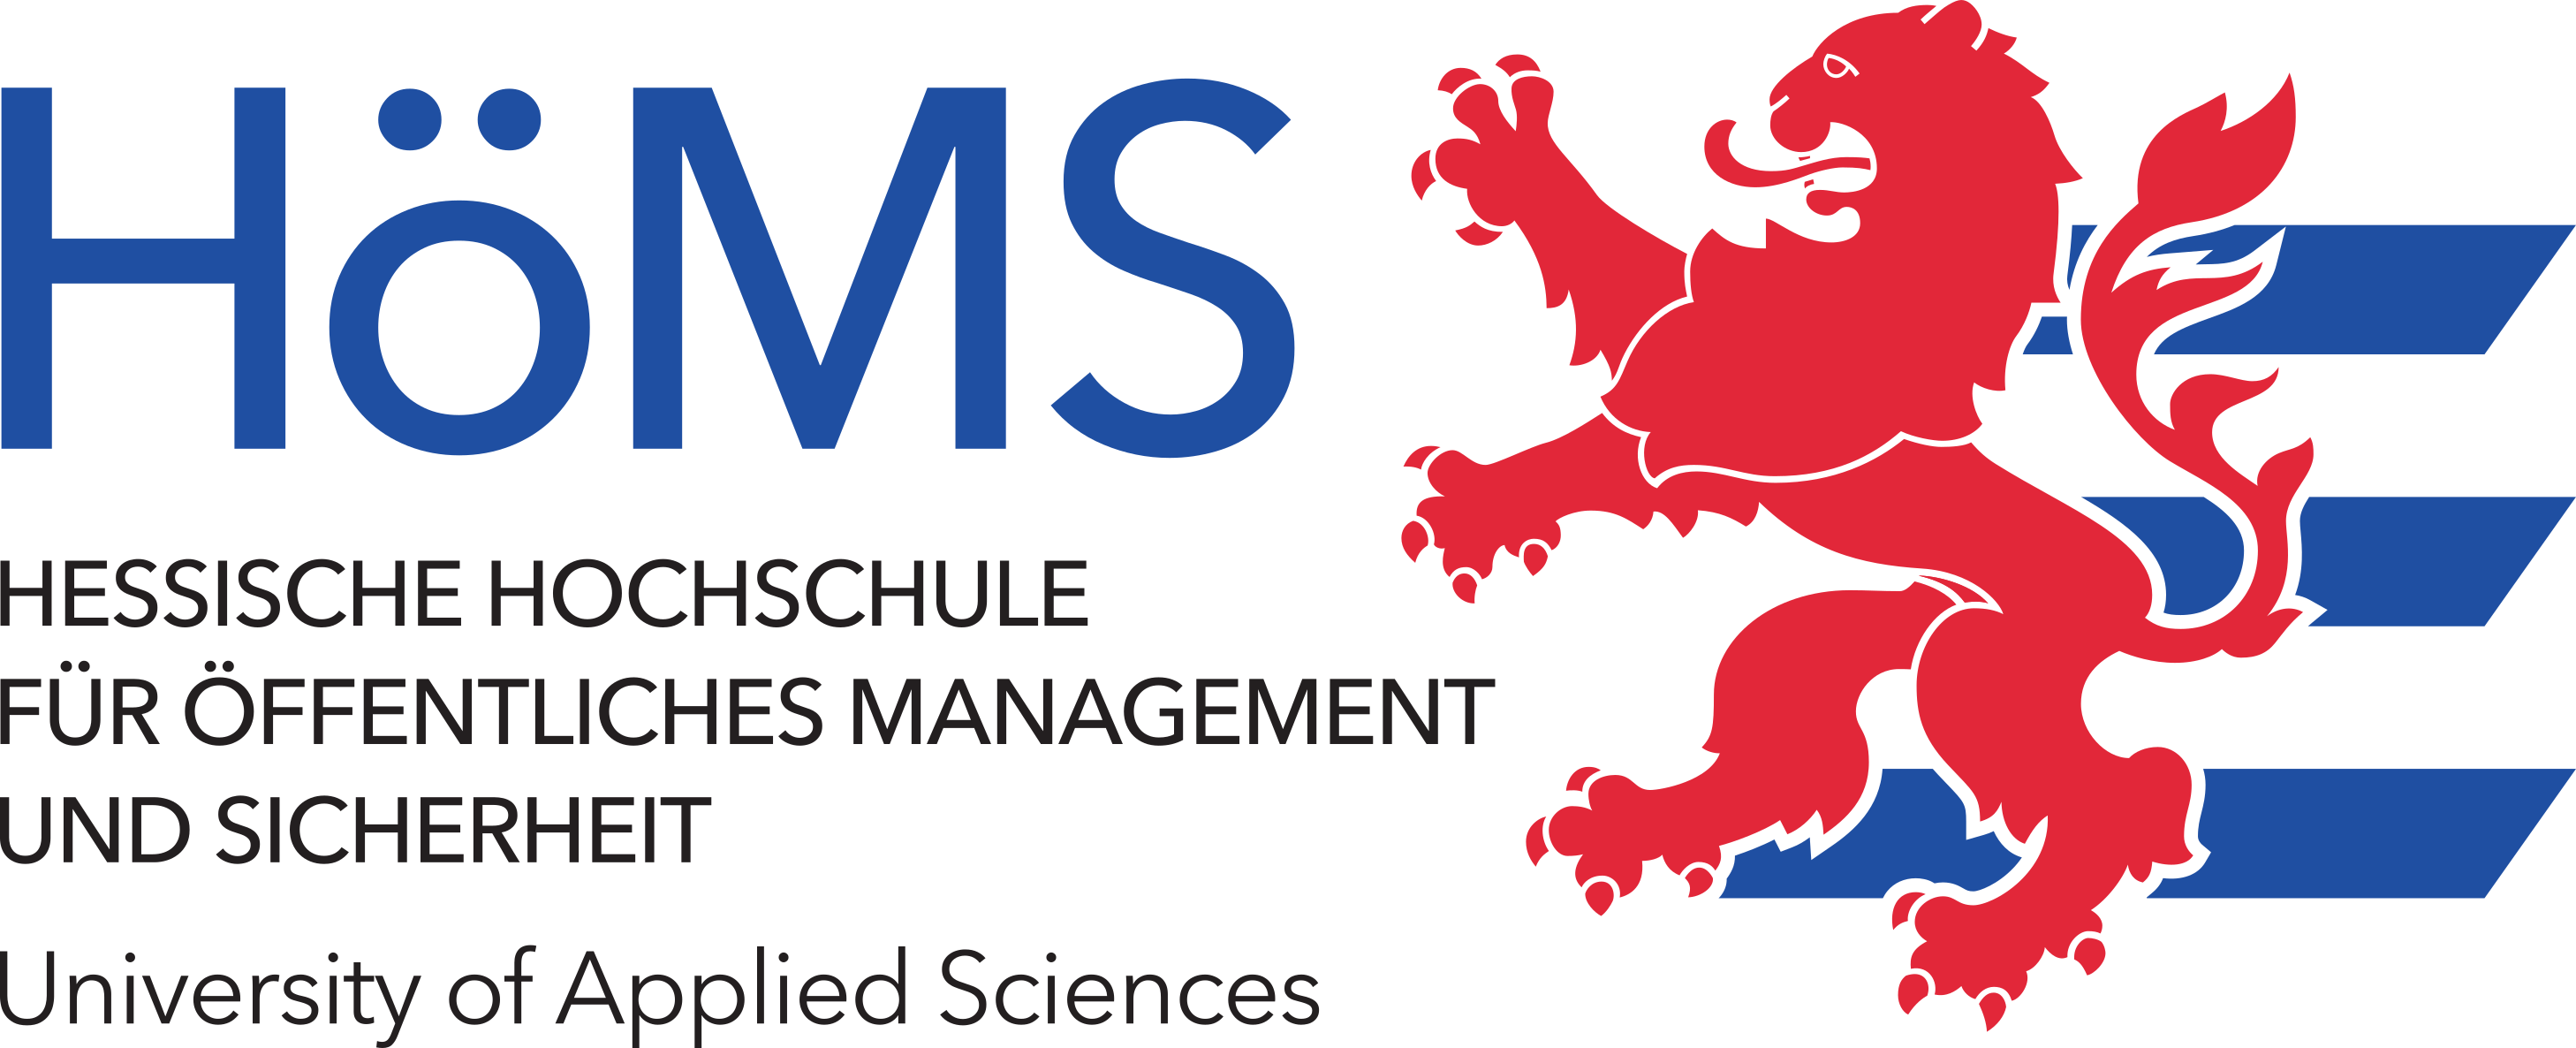 Logo der Hochschule für öffentliches Management und Sicherheit